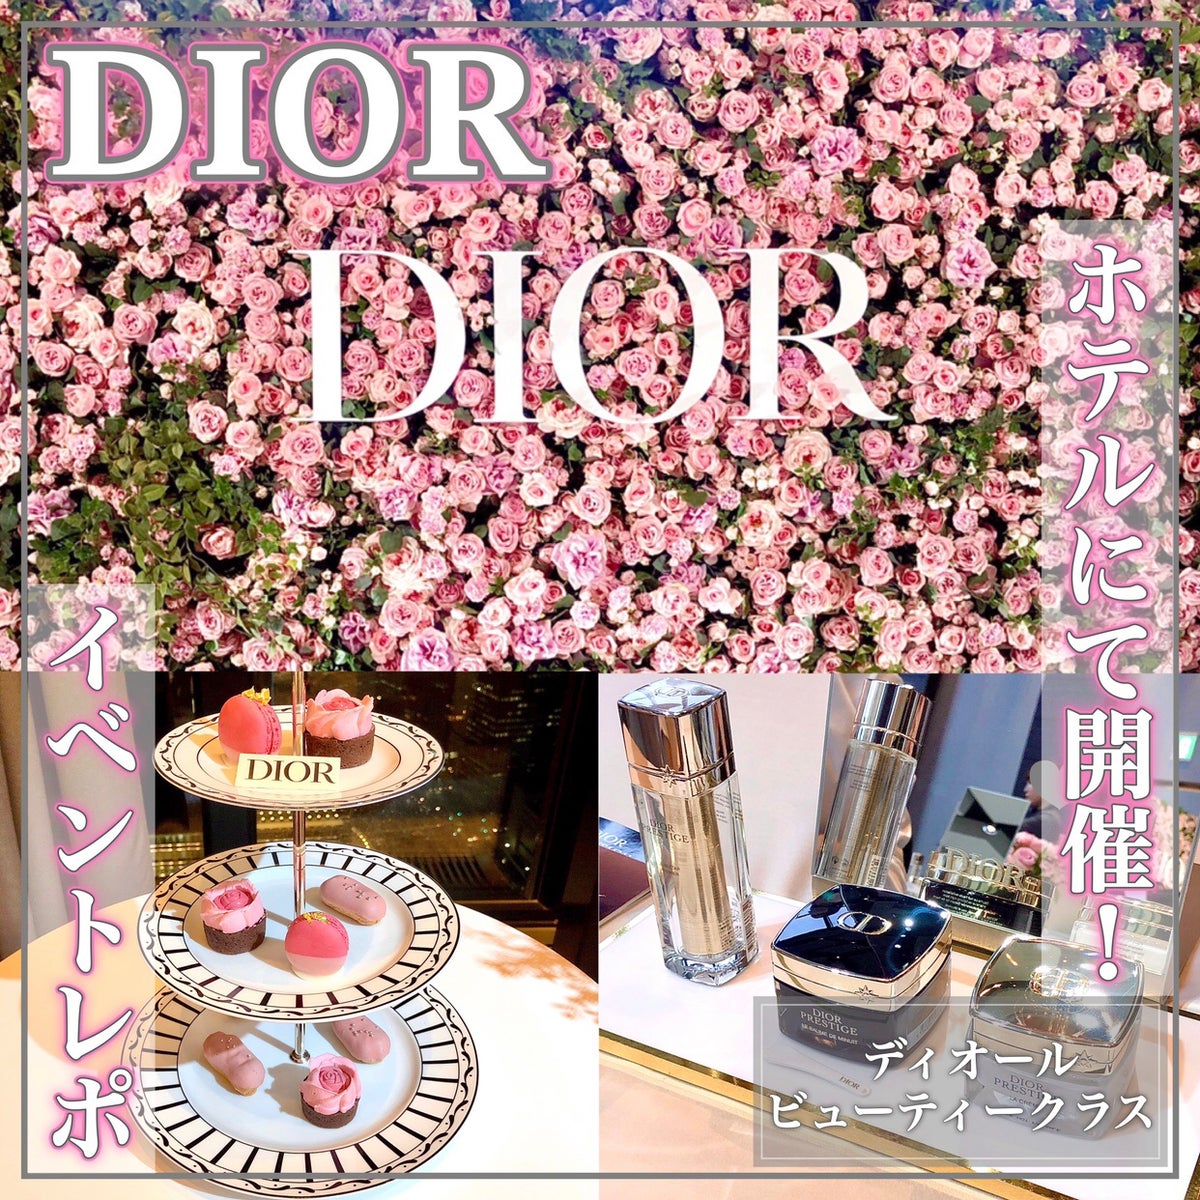 試してみた】【旧】プレステージ ラ クレーム ニュイ / Diorの効果・肌